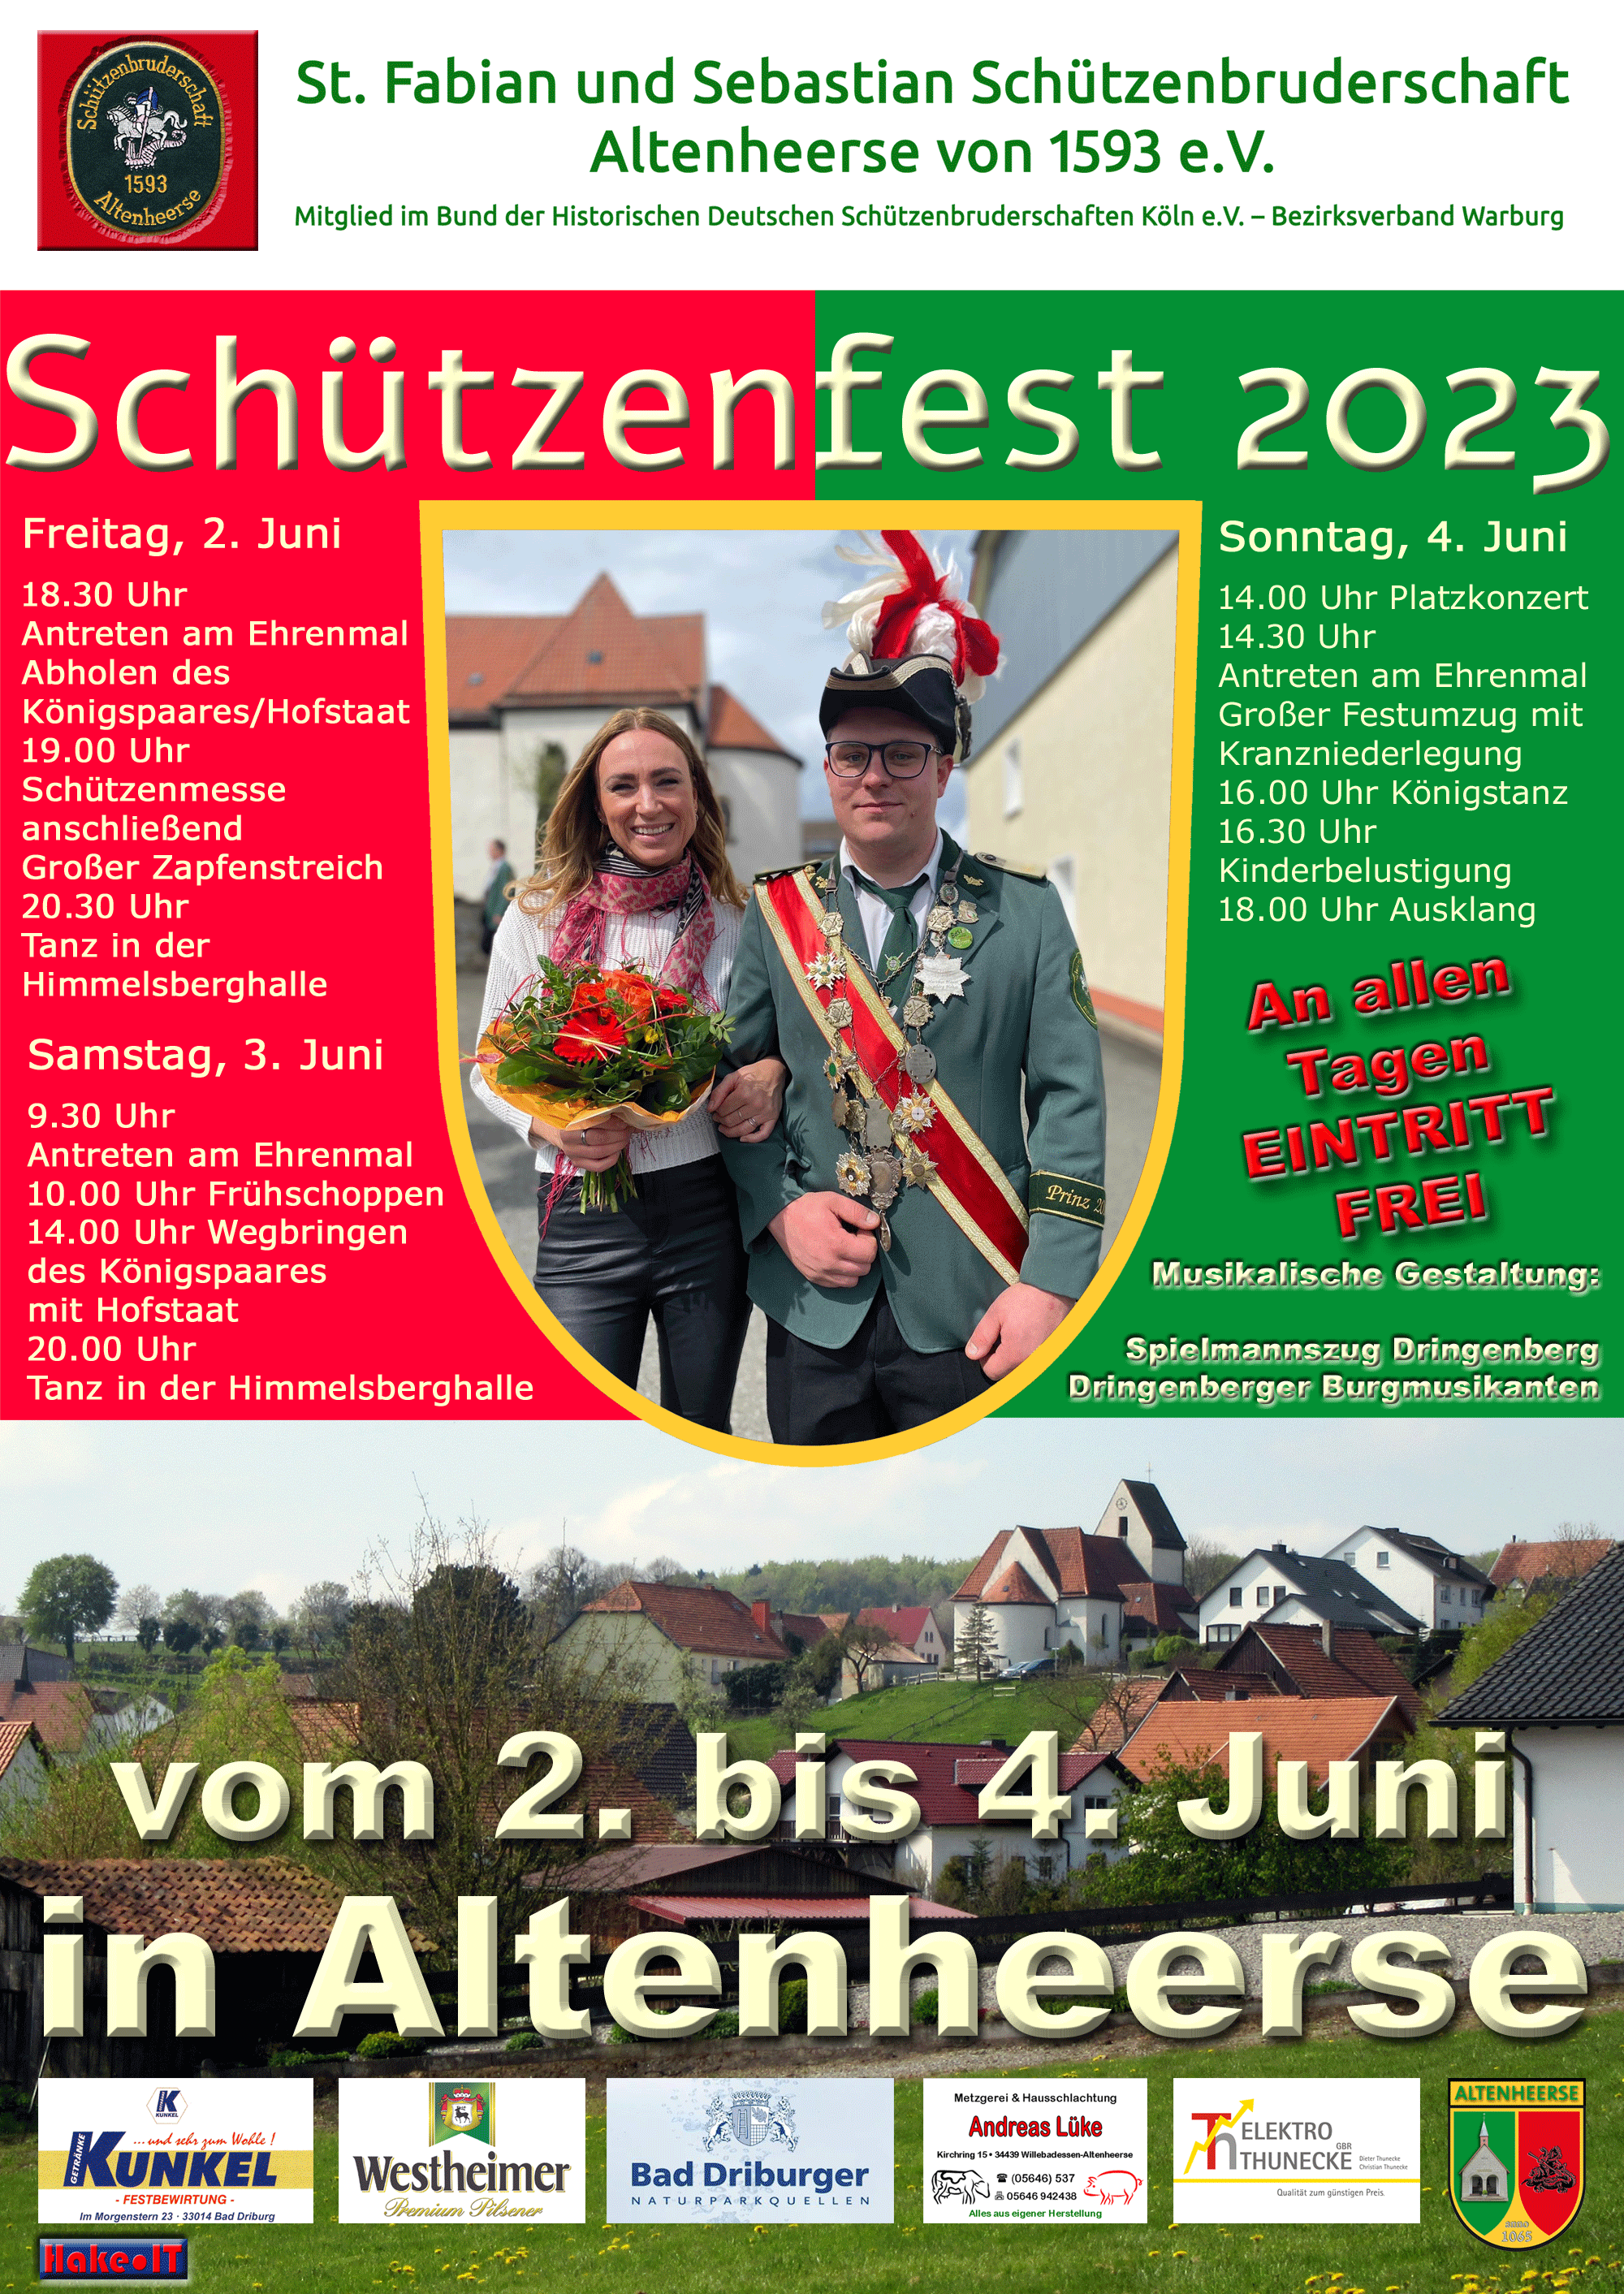 Schützenfest 2023 in Altenheerse - Plakat